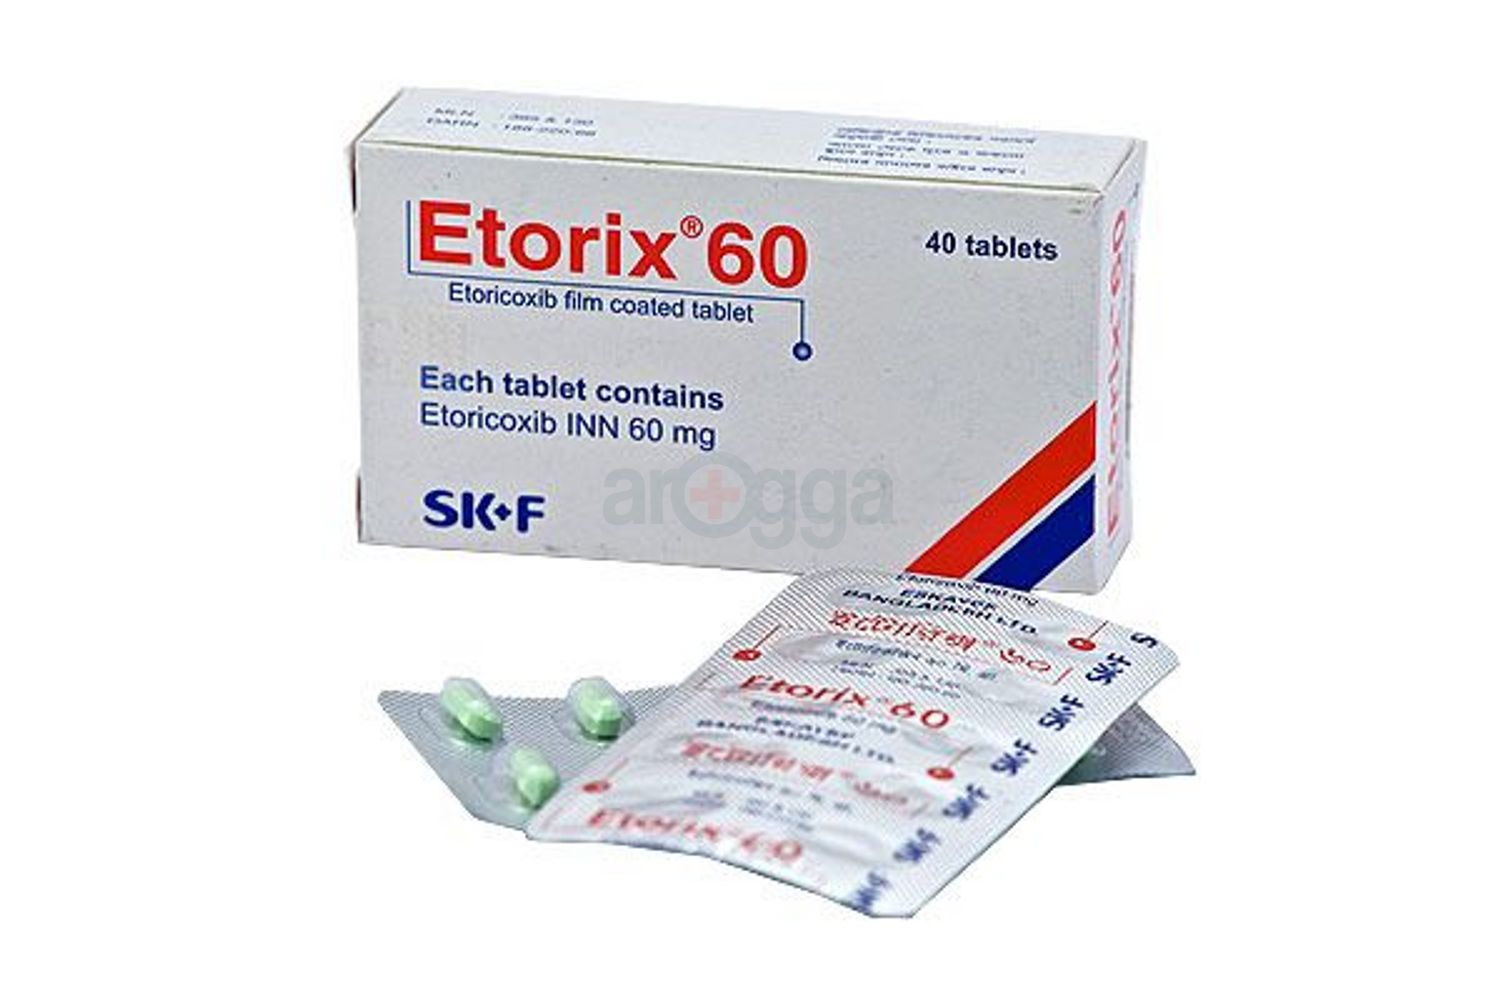 Etorix 60